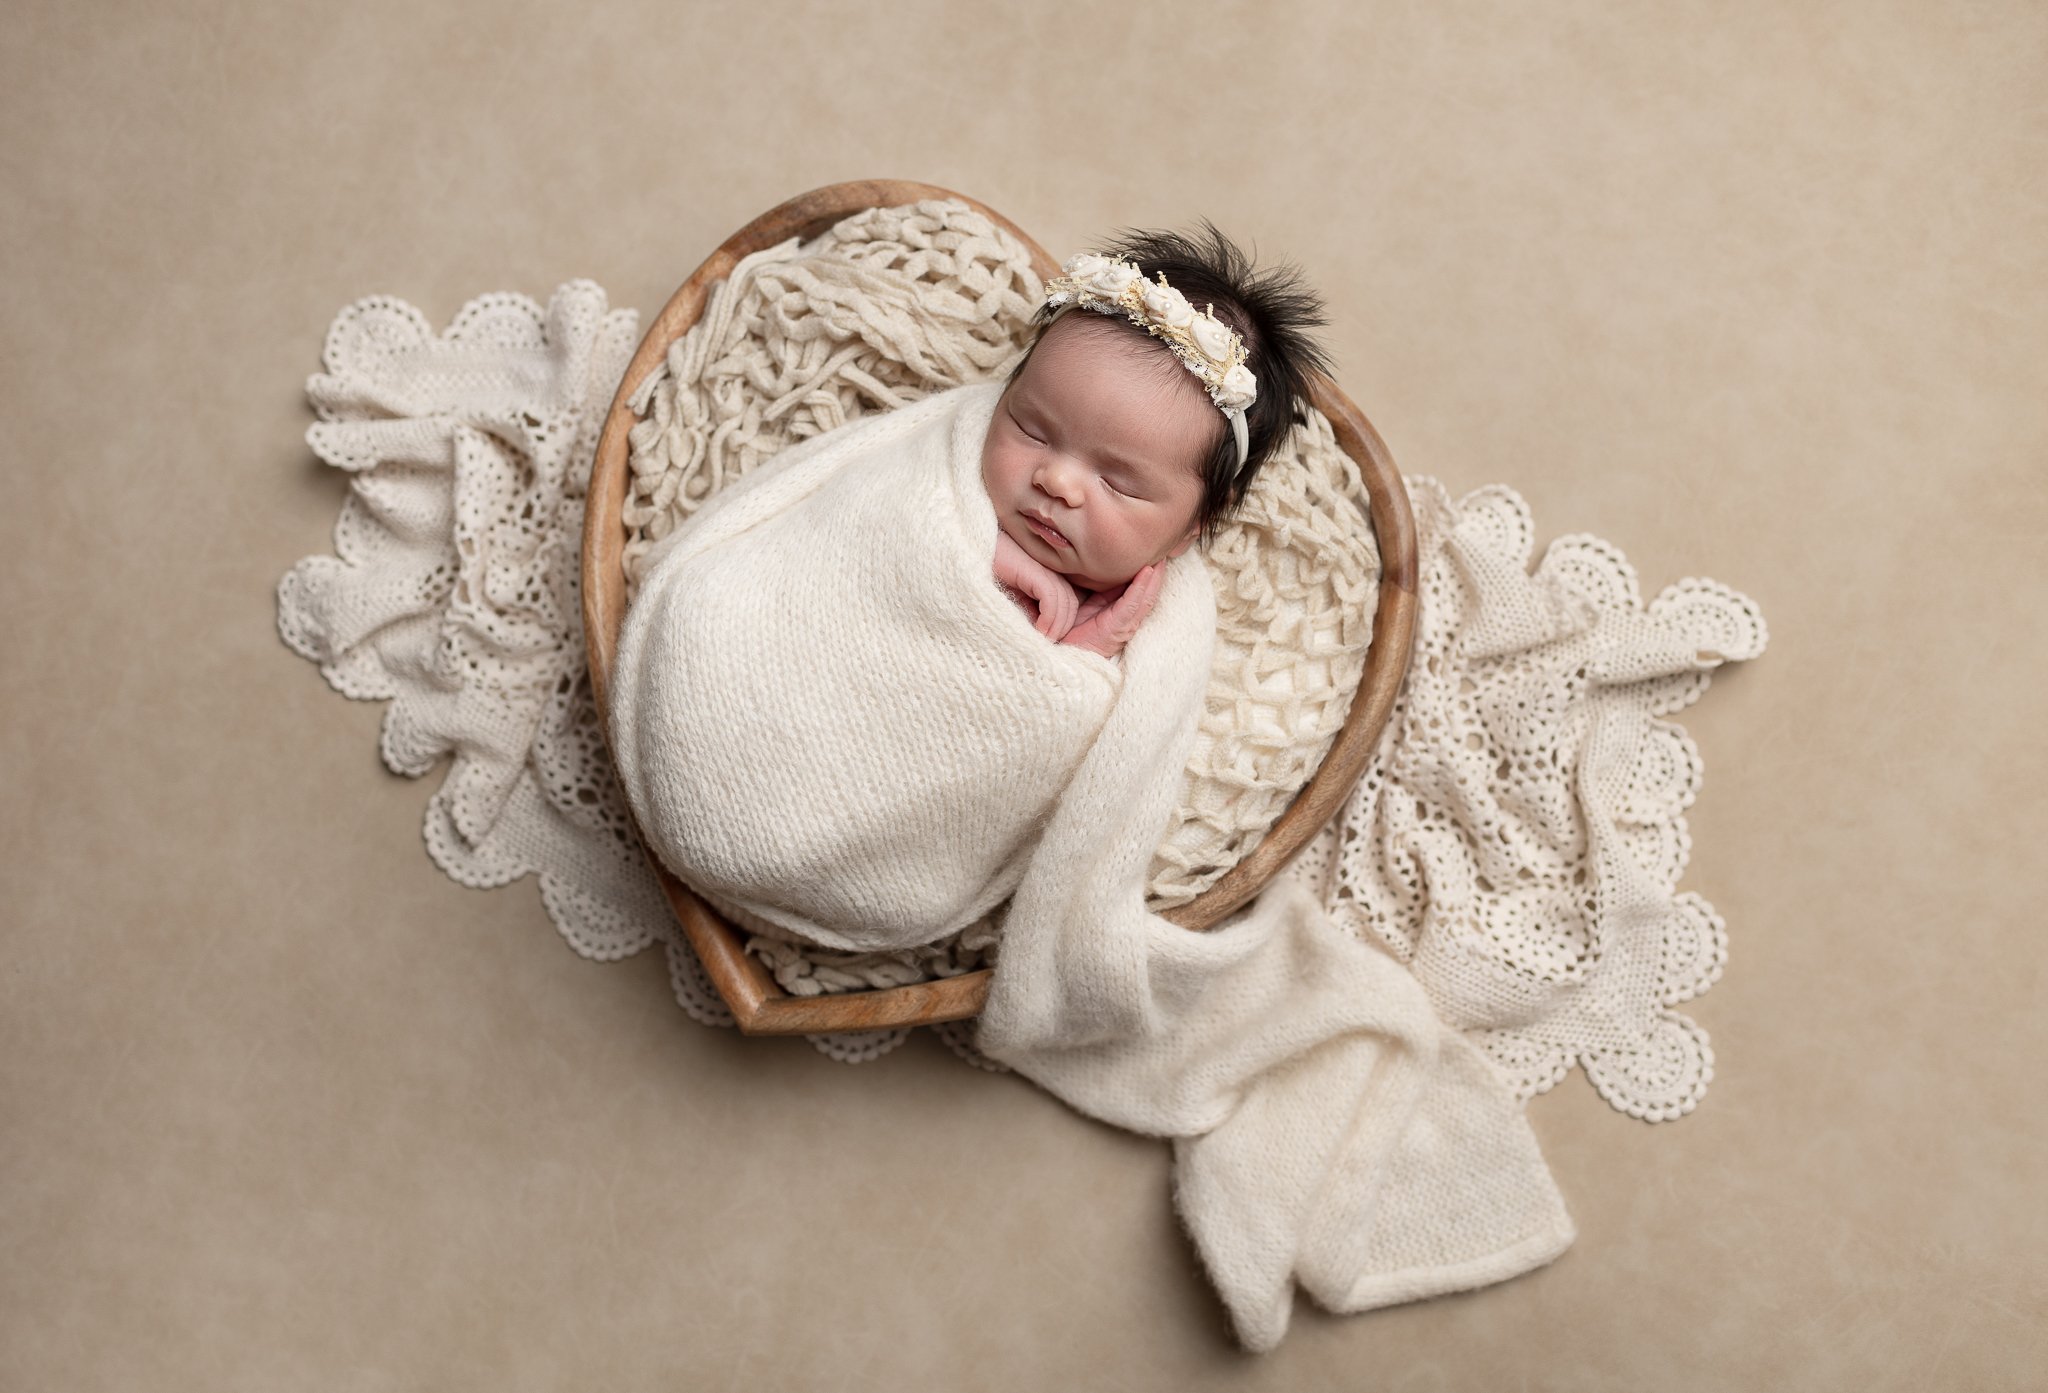 SanDiego-Best-Newborn-Baby-Photographer-10.jpg